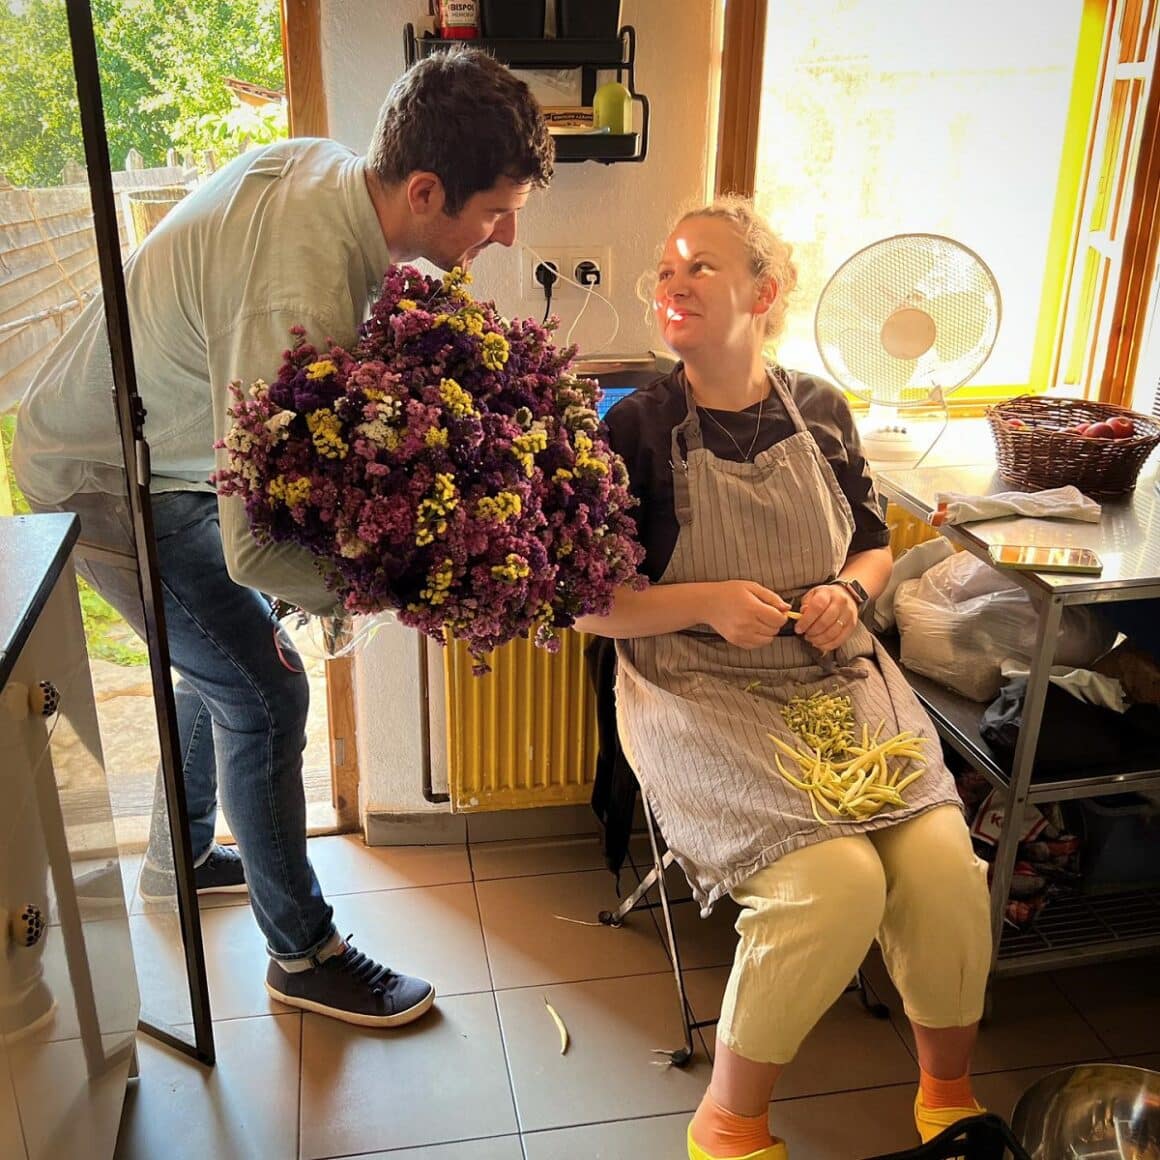 Mara Elena Oană in sort de bucatarie, curata fasole verde si primeste flori de la un barbat